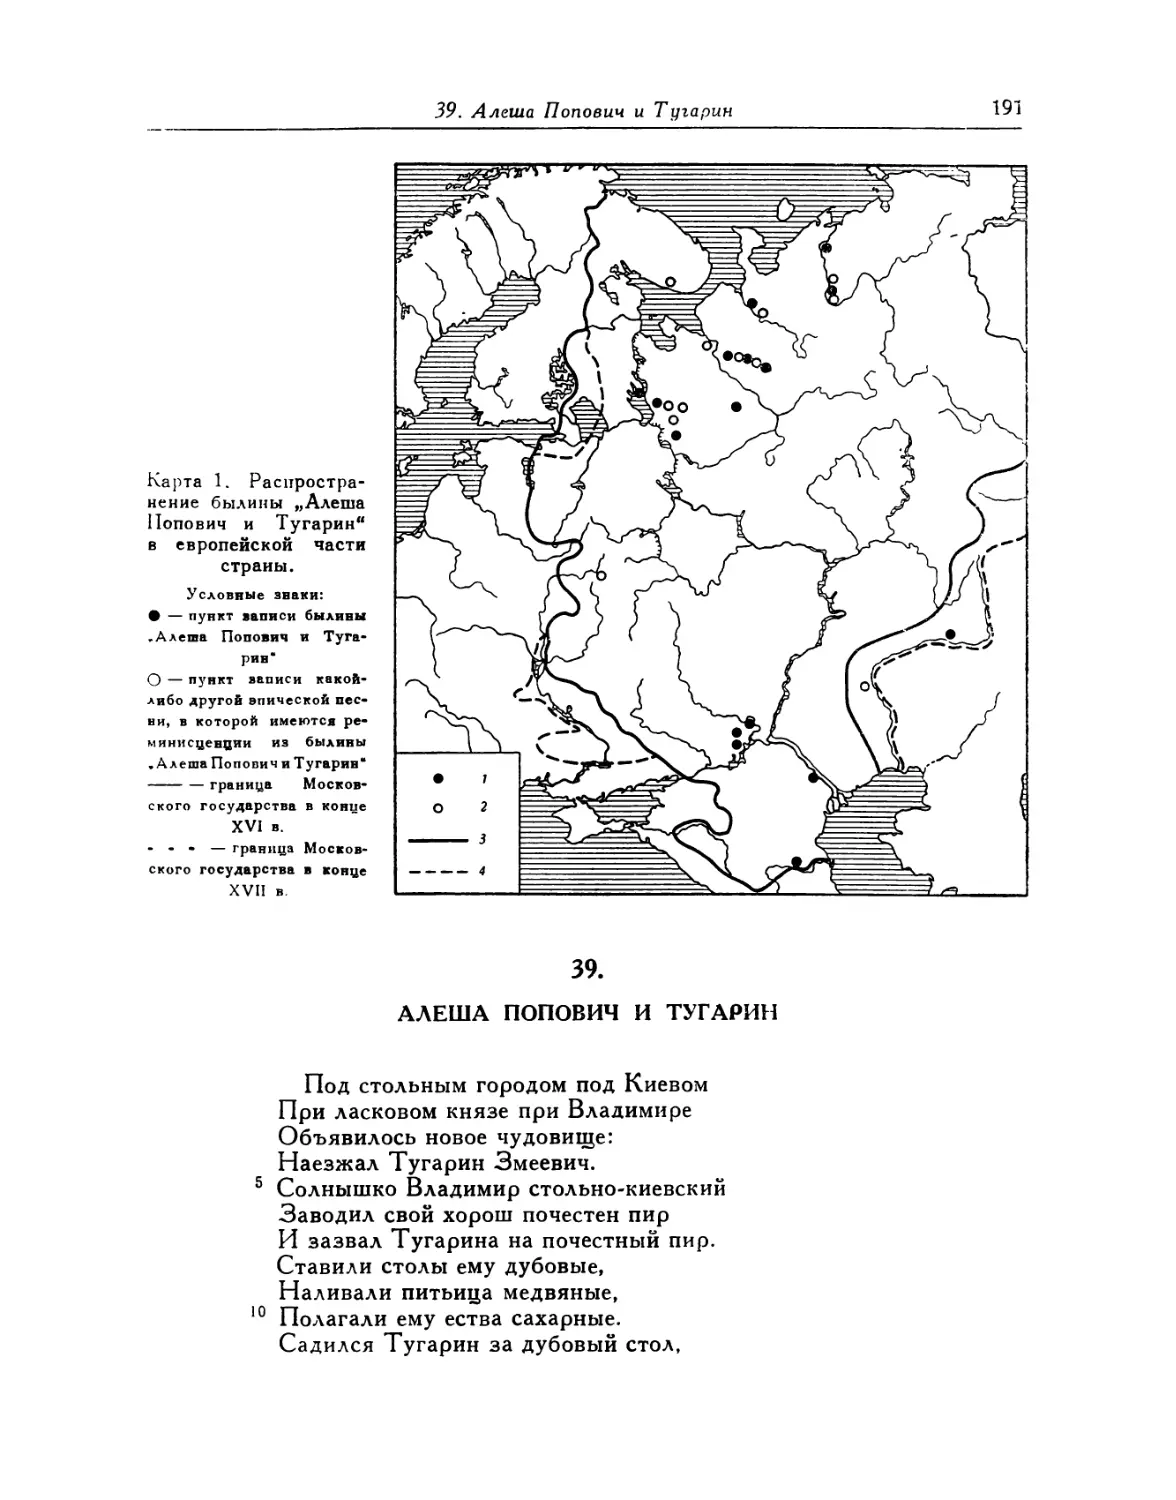 Карта 1. Распространение былины «Алеша Попович и Тугарин» в европейской части страны
39. Алеша Попович и Тугарин